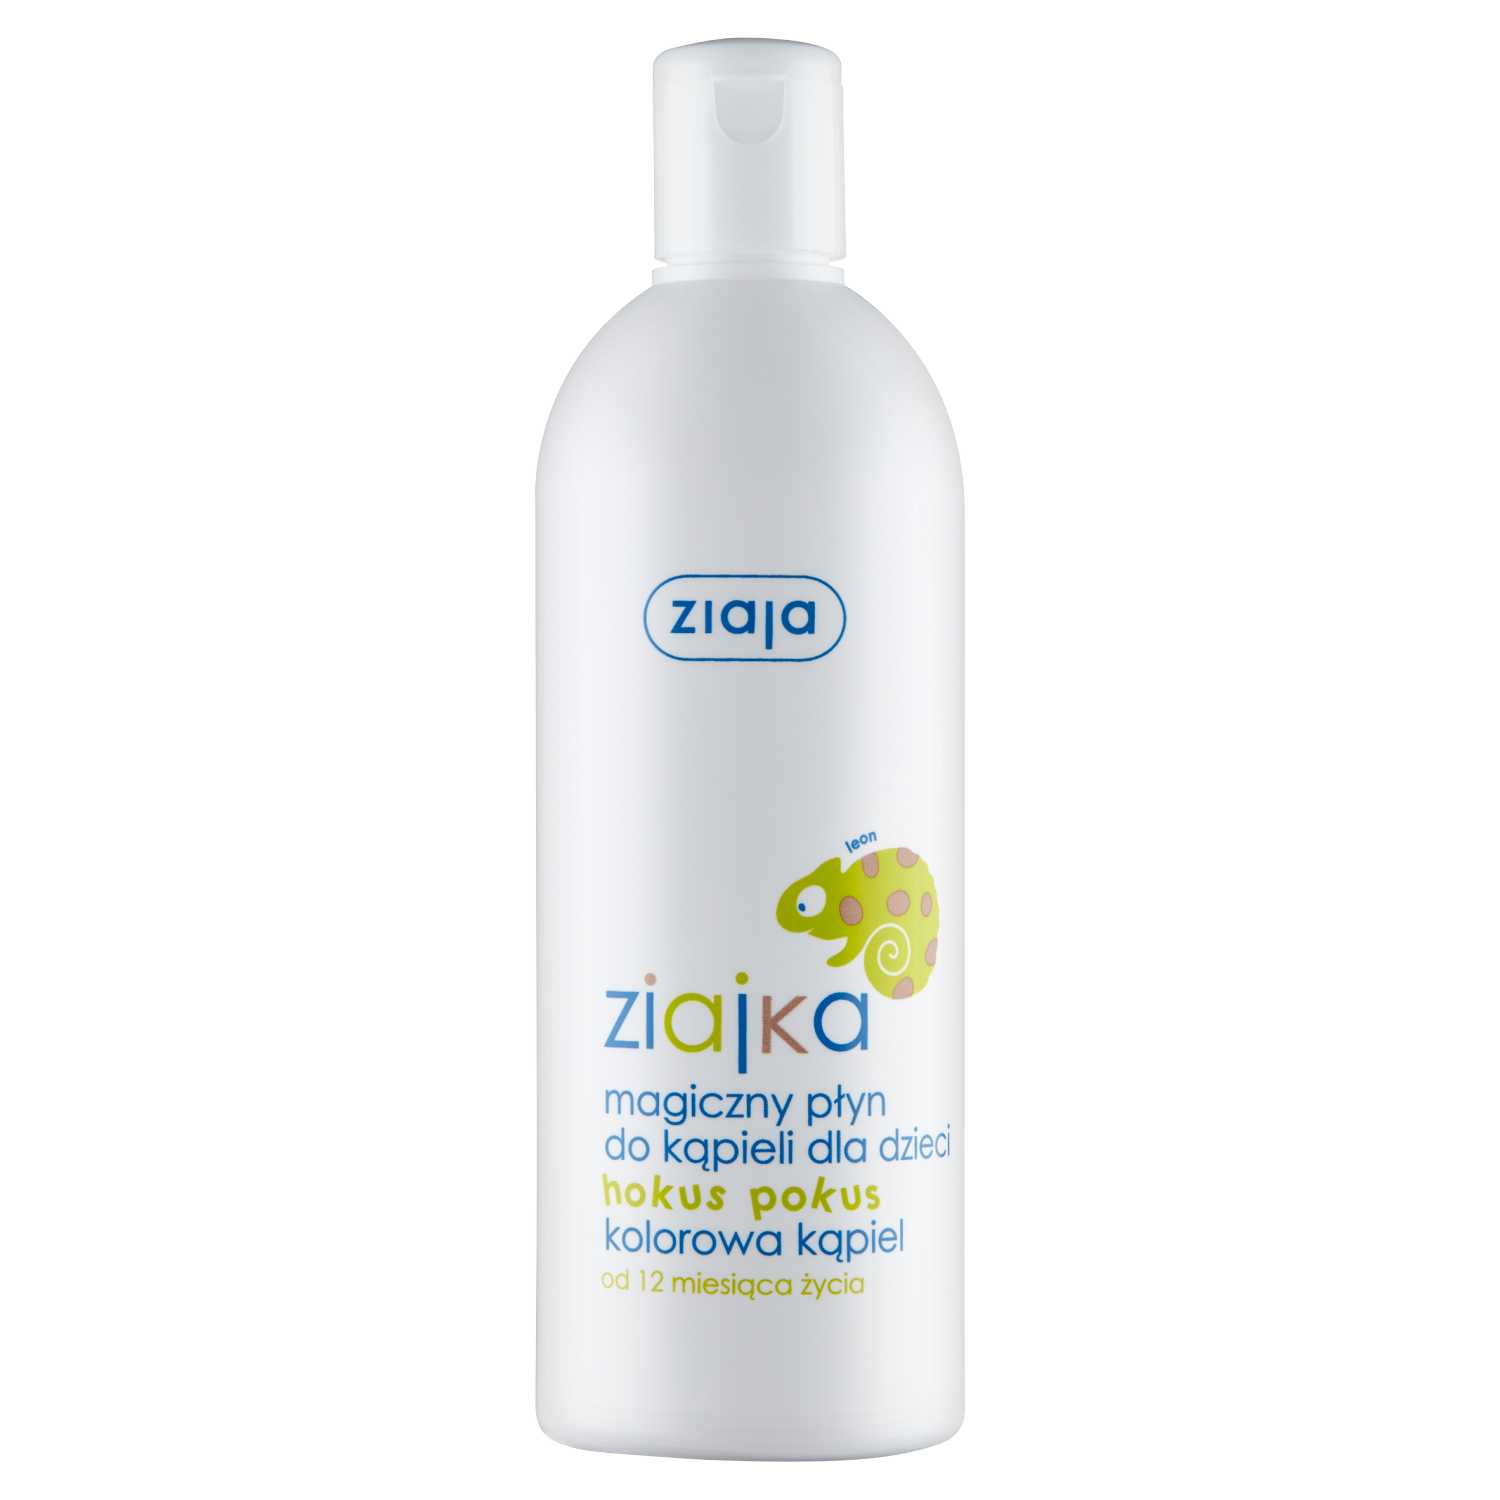 Ziaja волшебная жидкость для ванн для детей хокус-покус с 12 месяцев, 400 мл